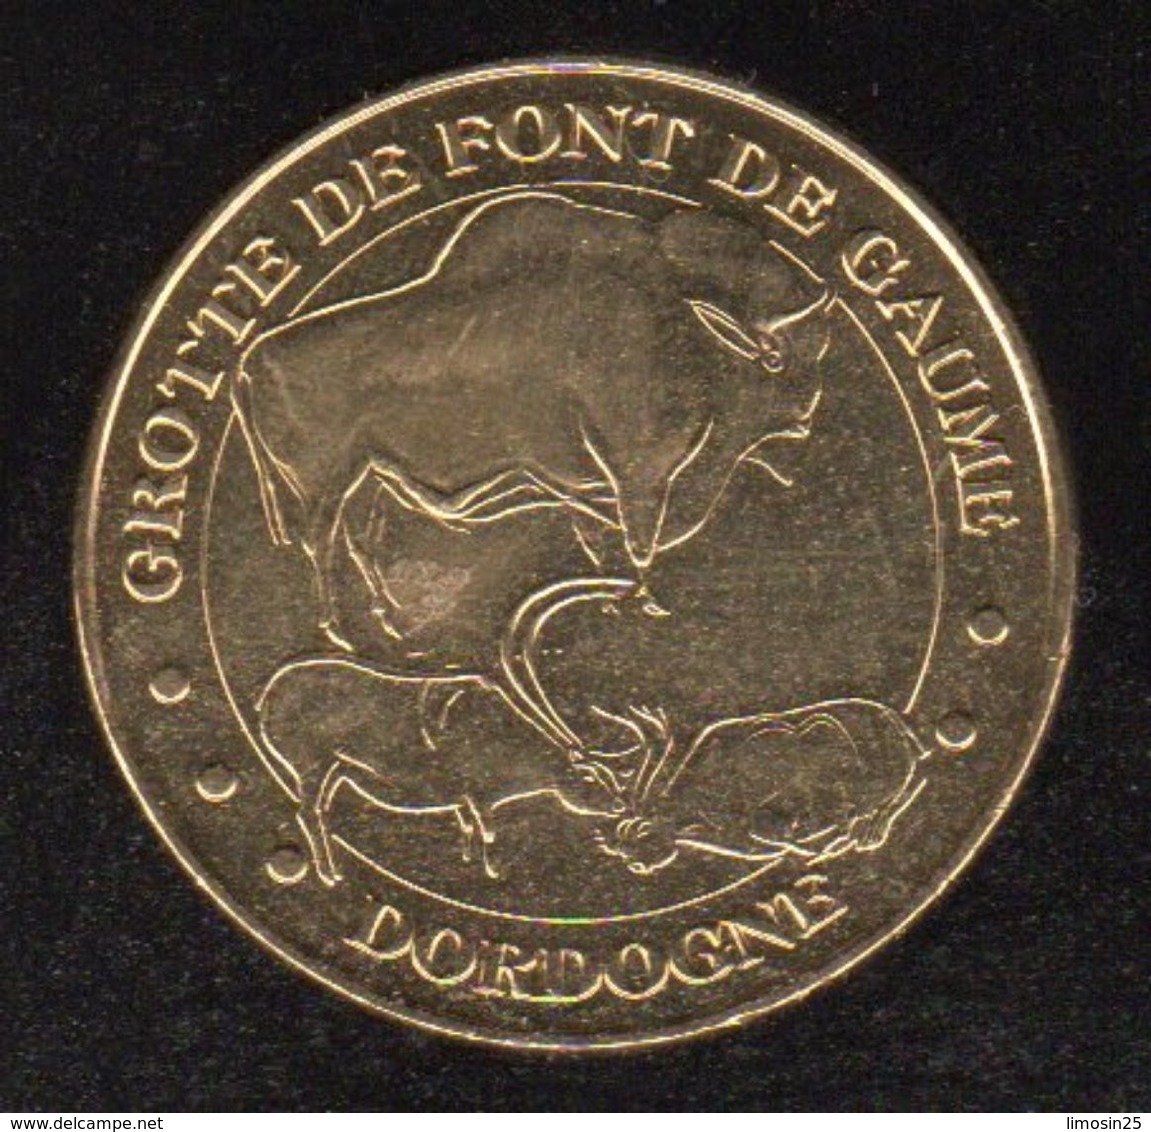 Monnaie De Paris - Grotte De Fond De Gaume - 2014